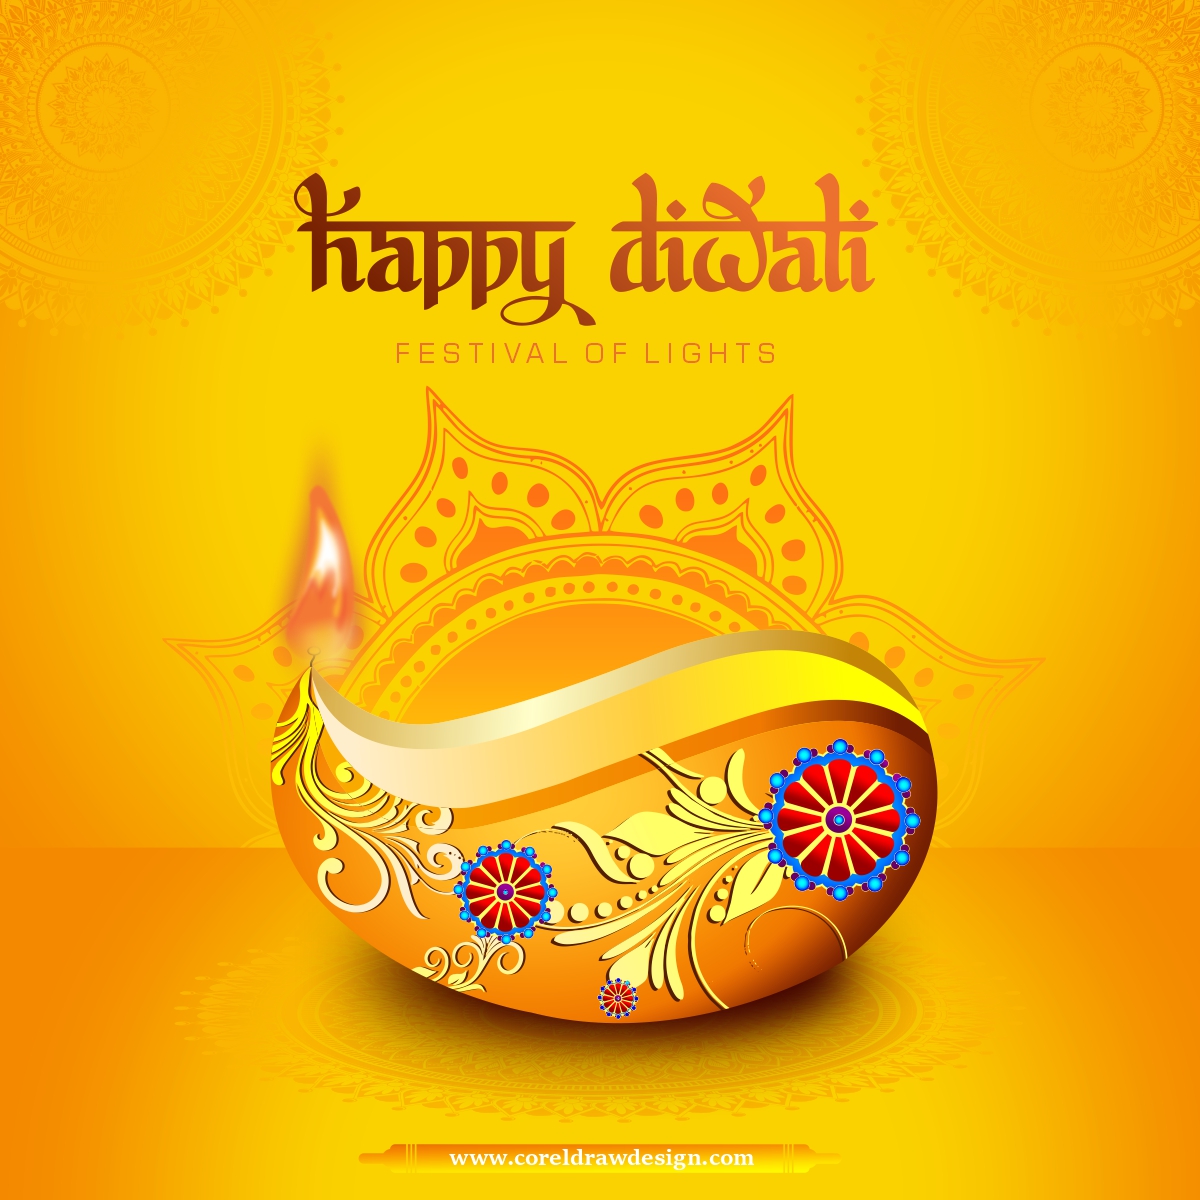 Download Diwali Greetings Beautiful Diwali Diya Watercolor Template Design  | CorelDraw Design (Download Free CDR, Vector, Stock Images, Tutorials,  Tips & Tricks)